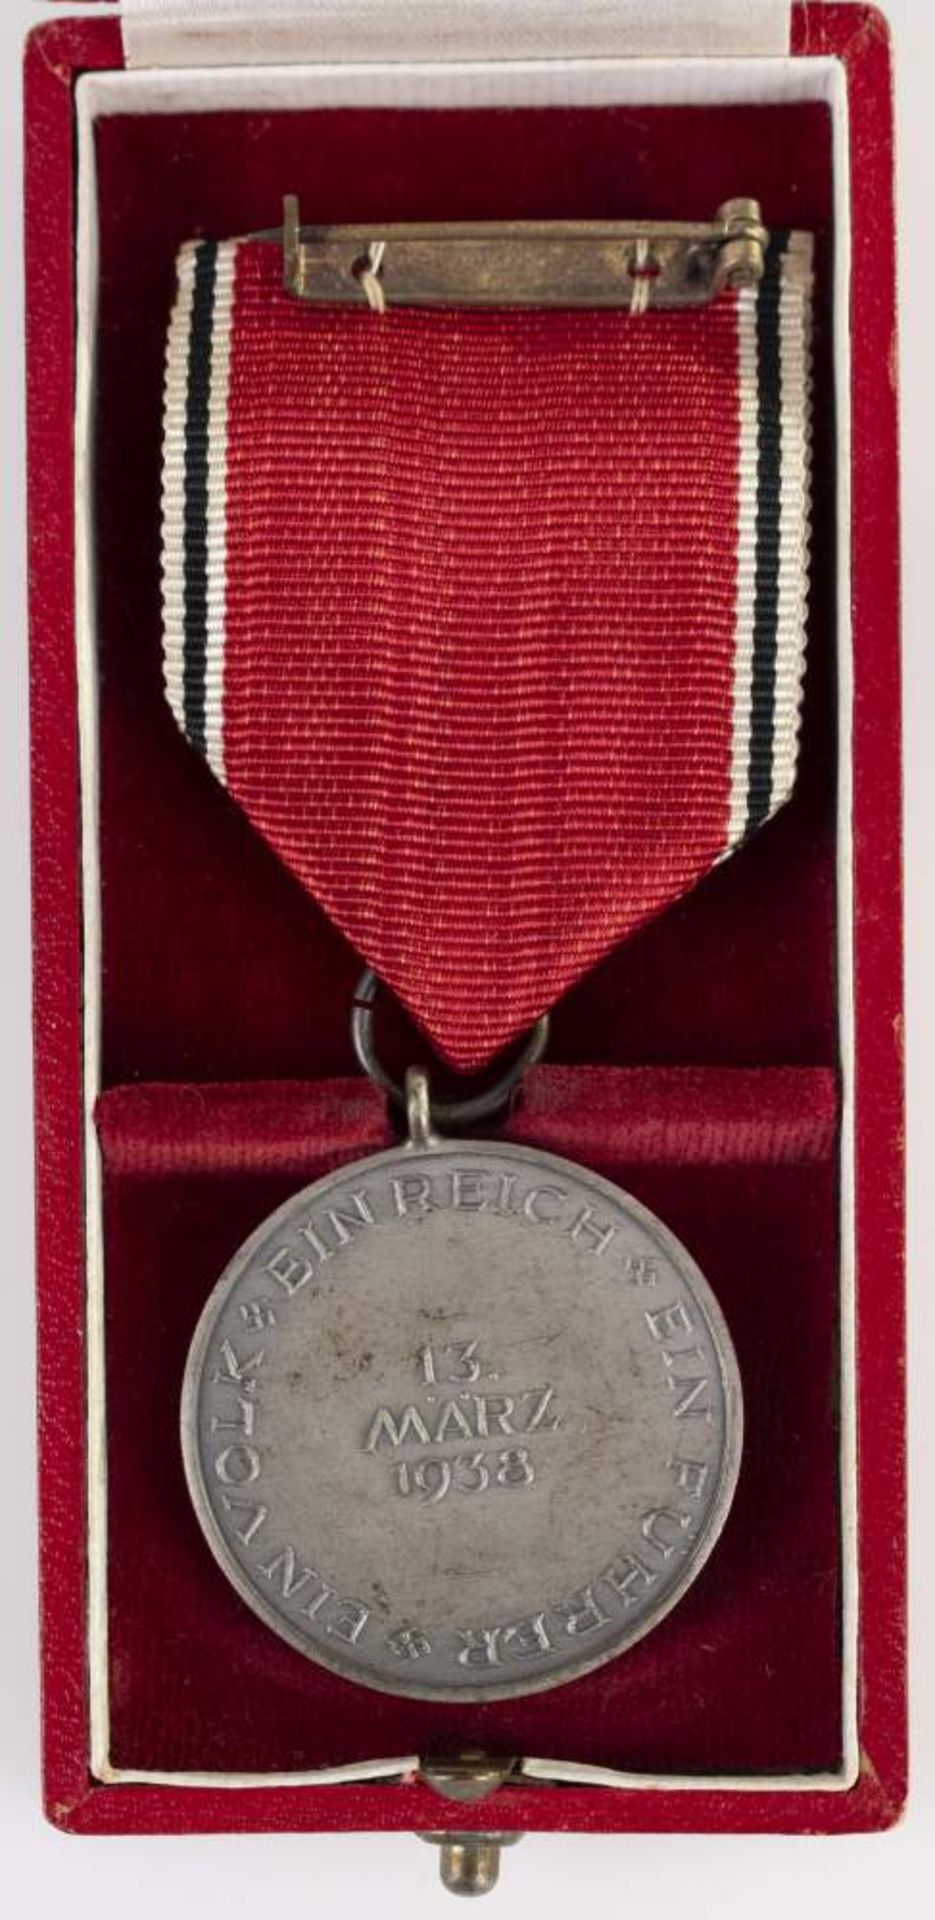 Anschlussmedaille Österreich, Medaille zur Erinnerung an den 13. März 1938, OEK 3516, am - Bild 2 aus 3